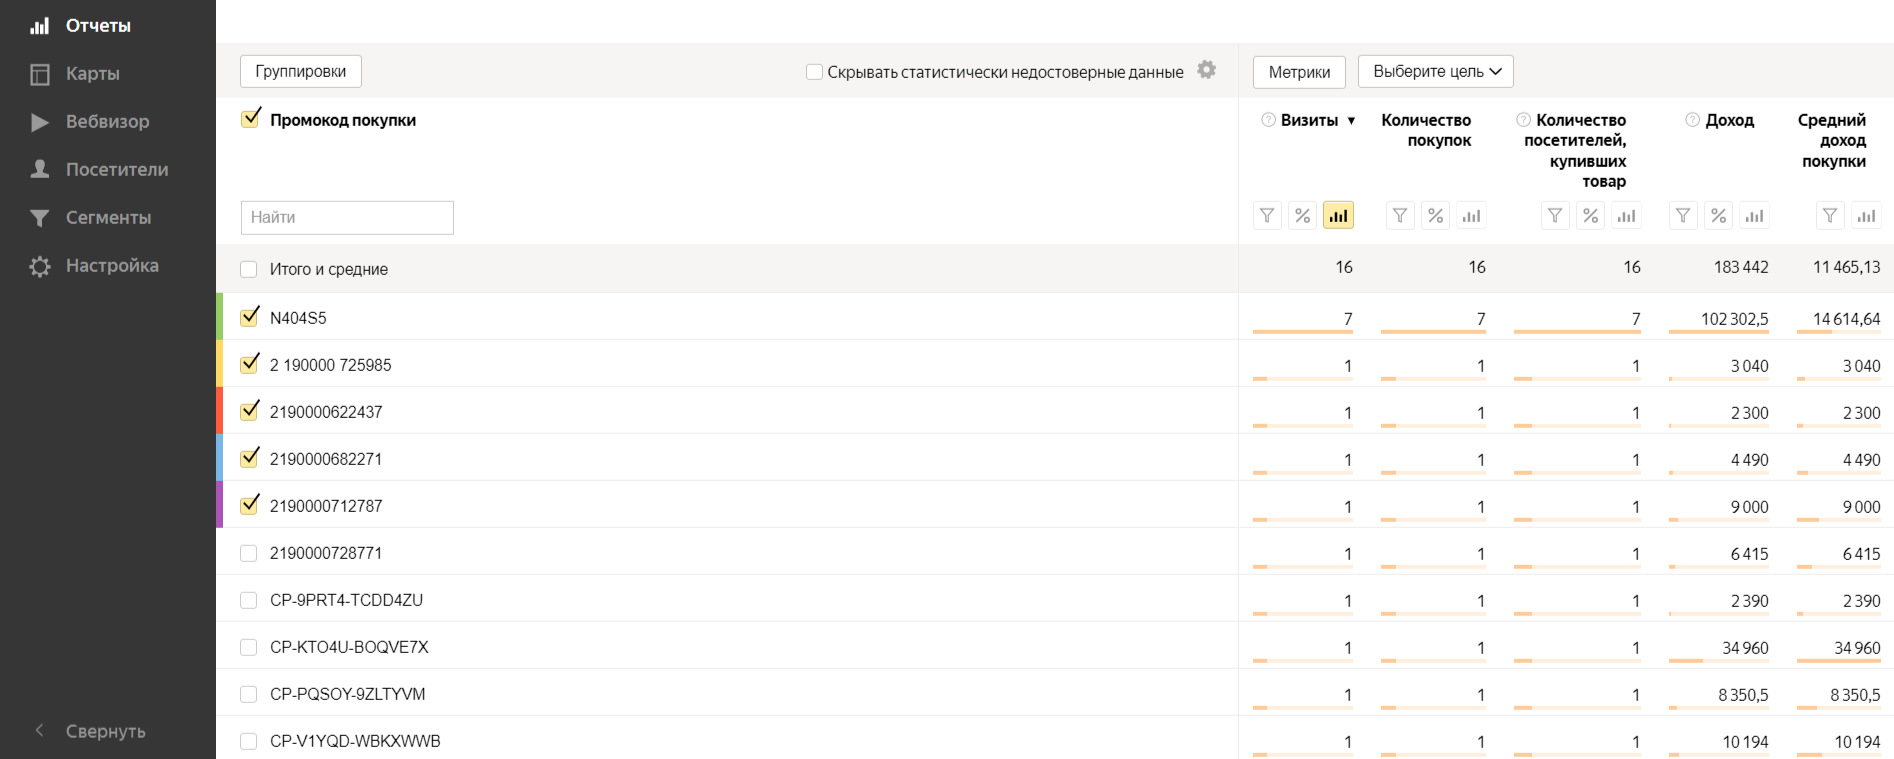 Яндекс.Метрика для интернет-магазинов: главные инструменты и отчеты | iProWeb